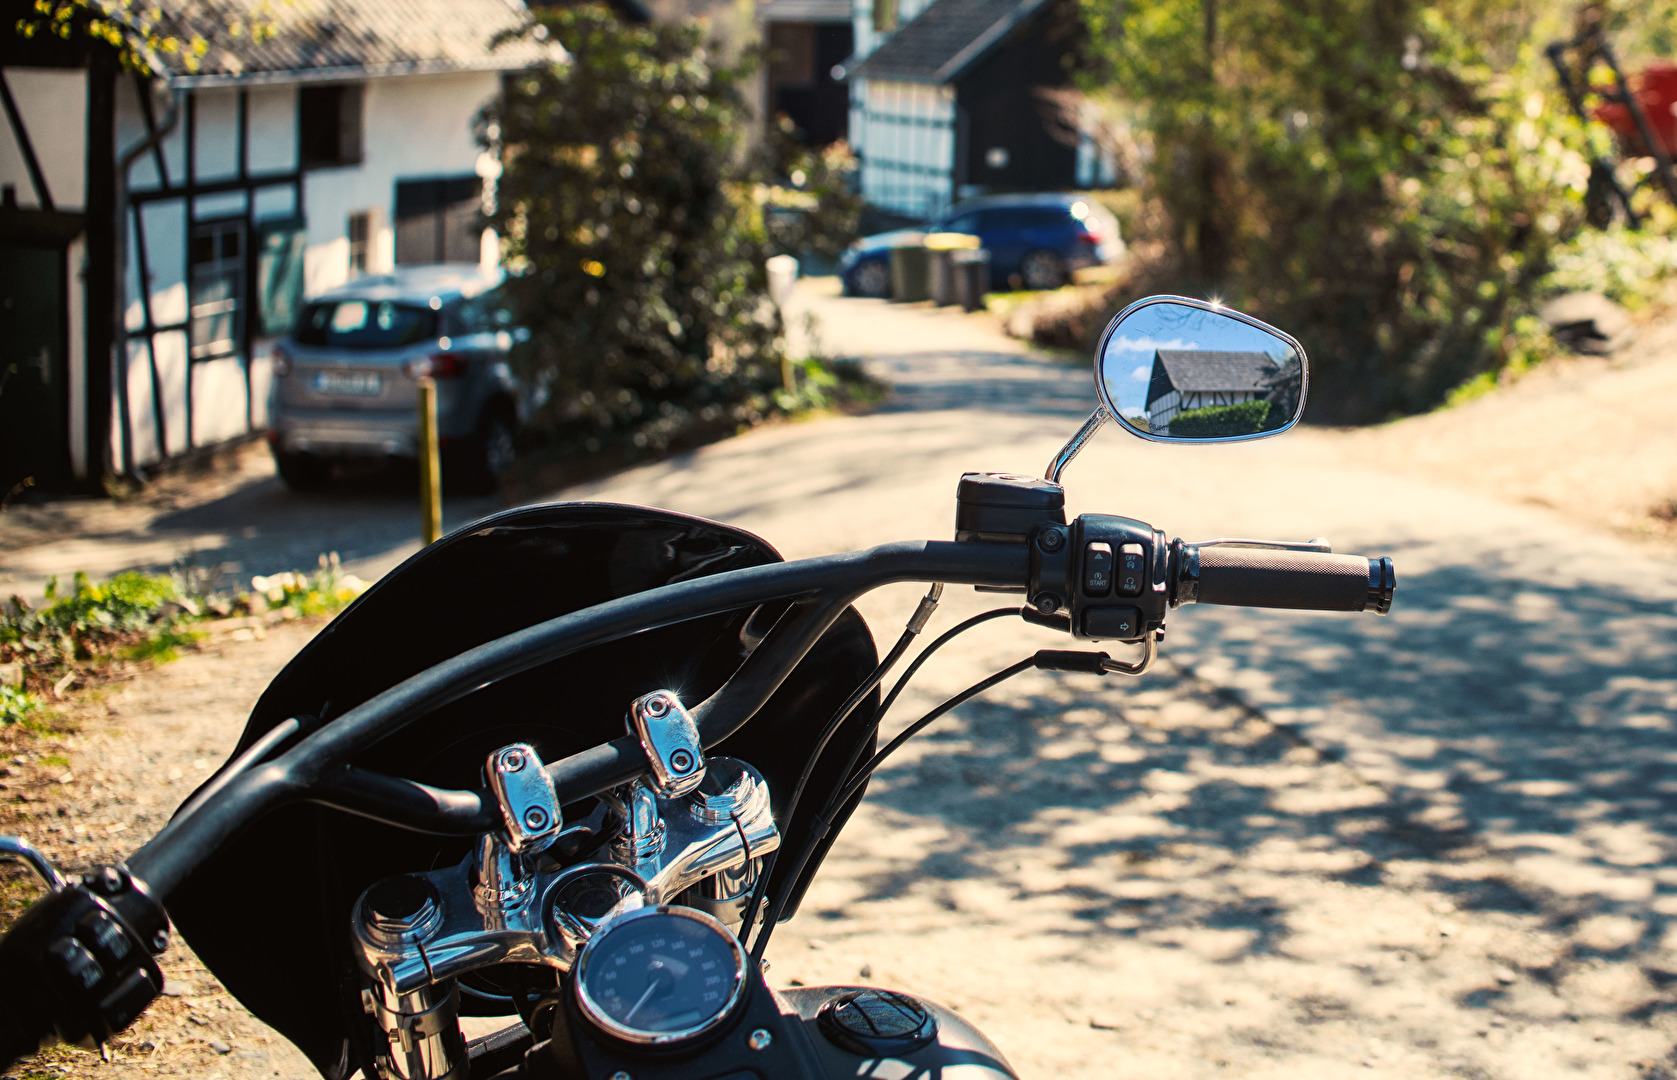 TT: ... und im Spiegel der Harley sieht man die #Nachbarn